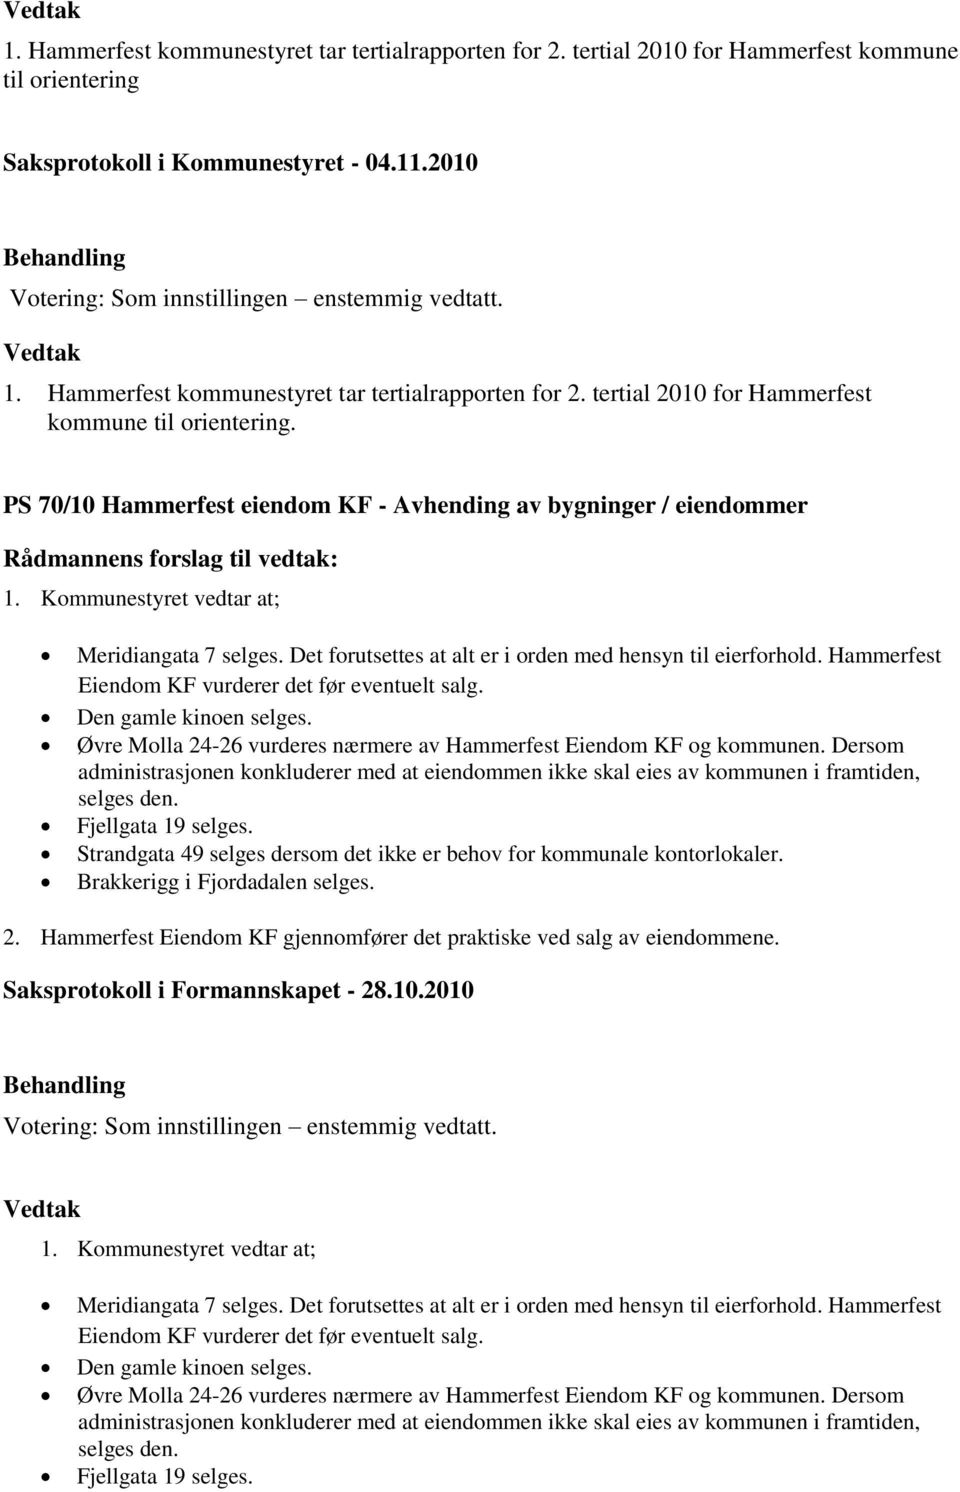 Øvre Molla 24-26 vurderes nærmere av Hammerfest Eiendom KF og kommunen. Dersom administrasjonen konkluderer med at eiendommen ikke skal eies av kommunen i framtiden, selges den. Fjellgata 19 selges.